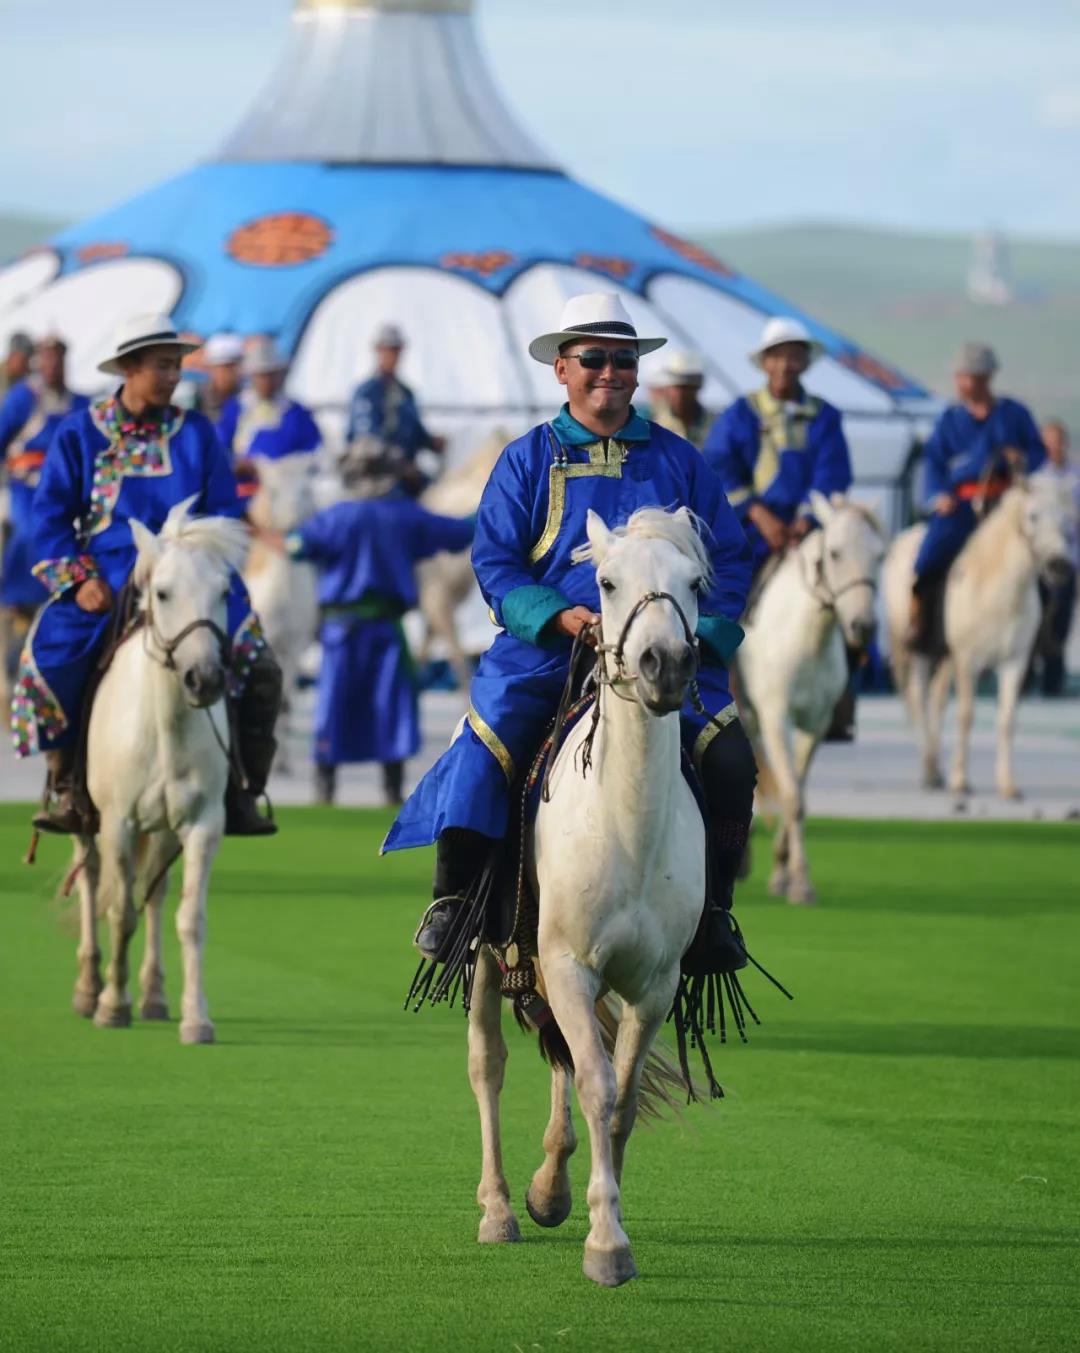 西乌旗老照片……-草原元素---蒙古元素 Mongolia Elements